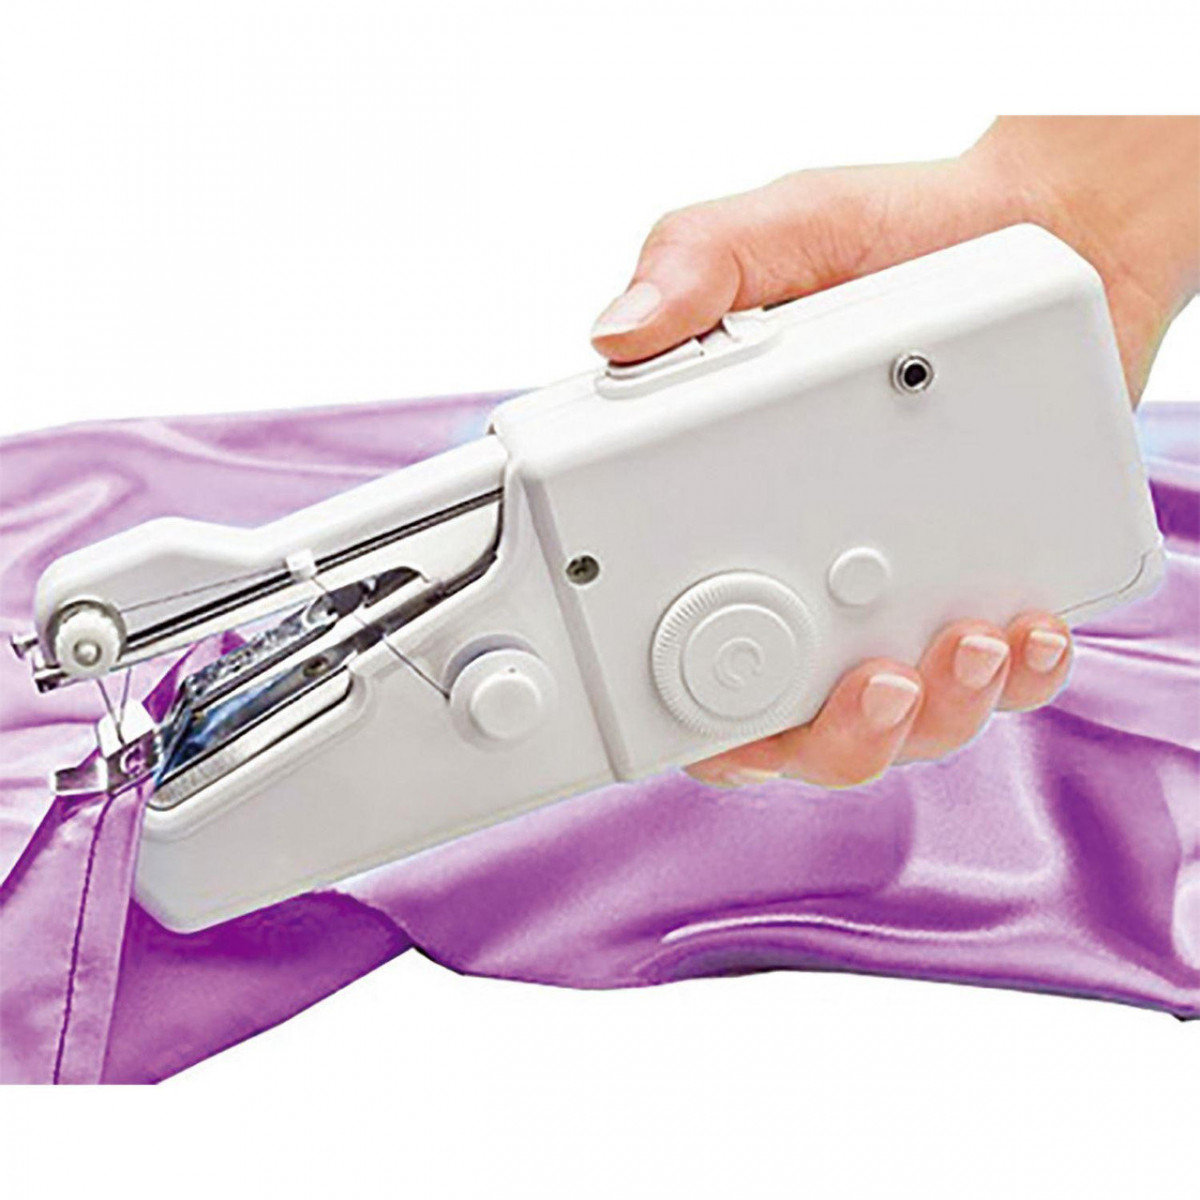 Как настроить и отрегулировать швейную машину своими руками - подробная инструкция